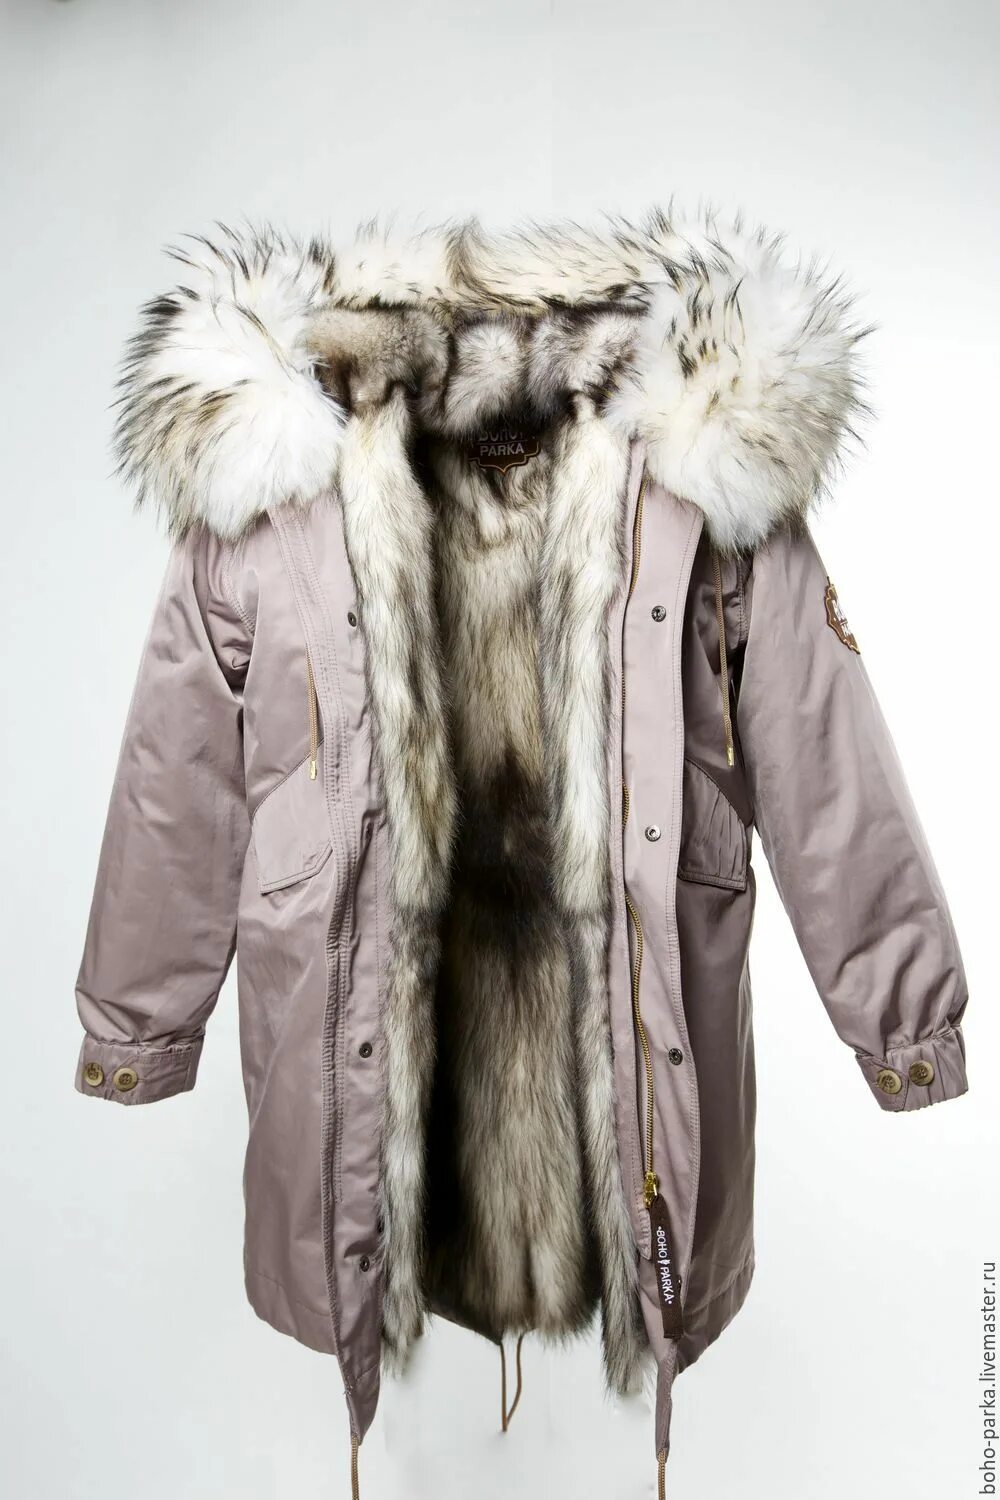 Аляска мех. Аляска с мехом. Аляска с мехом женская. Подстежки для курток зимние. Куртка с подстежкой из меха.